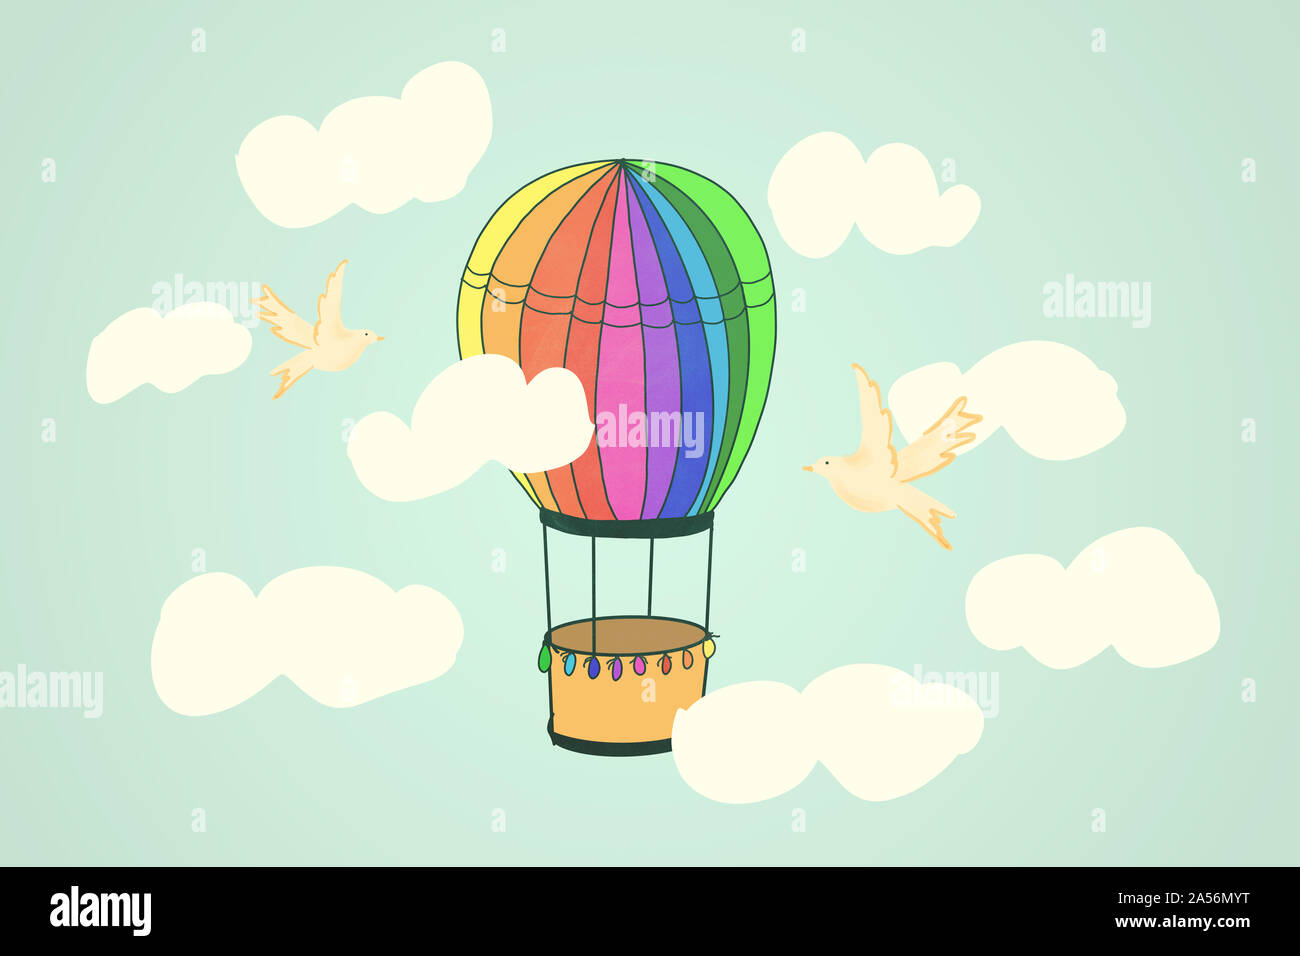 Ballon air colorés battant à travers le ciel nuageux avec l'accompagner d'oiseaux. Banque D'Images